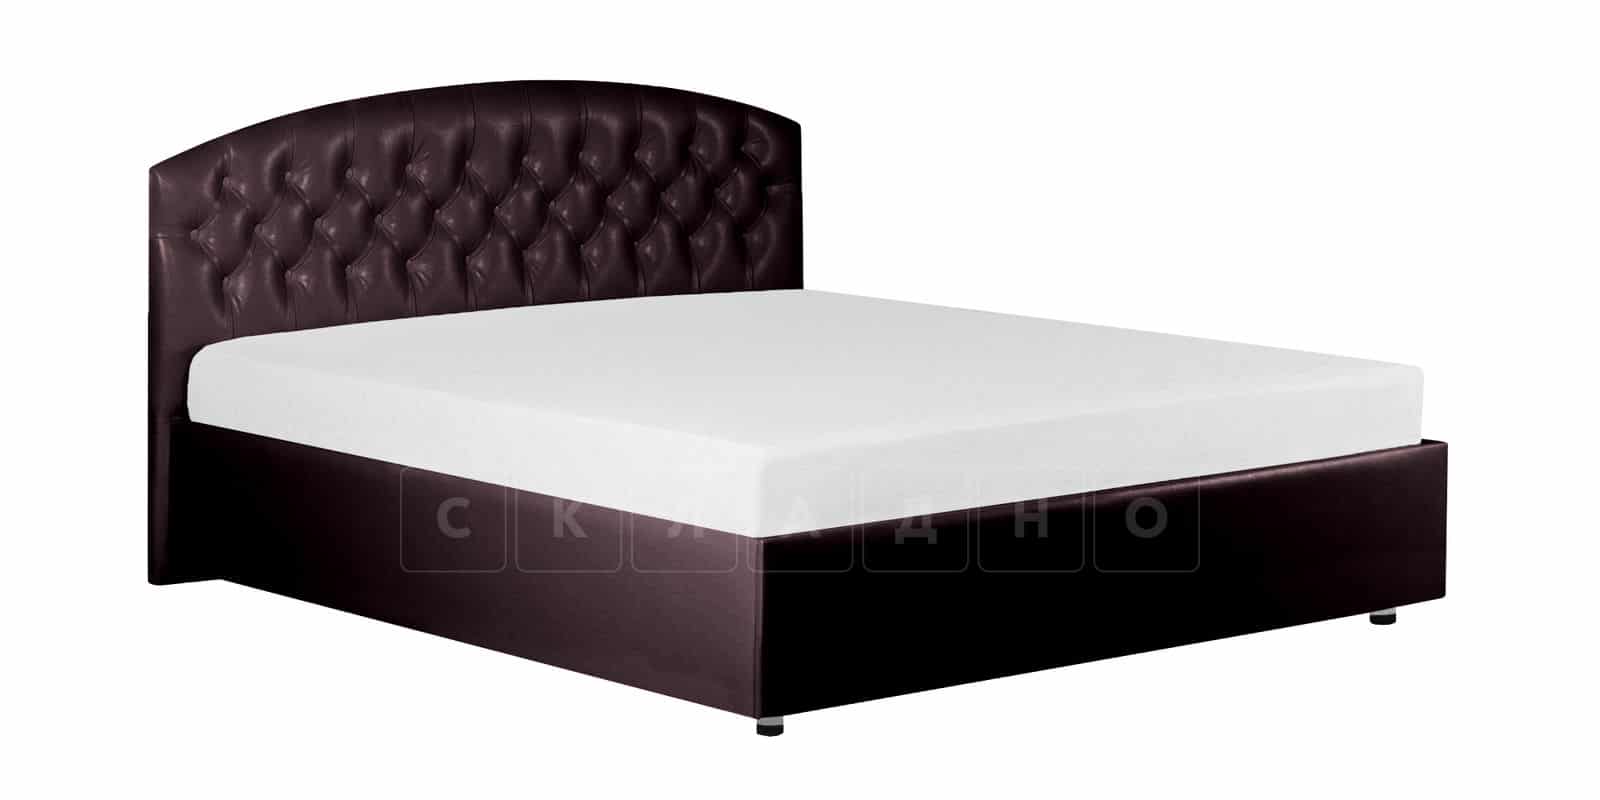 Мягкая кровать Малибу 160 см экокожа шоколадного цвета вариант 1-2 фото 6 | интернет-магазин Складно